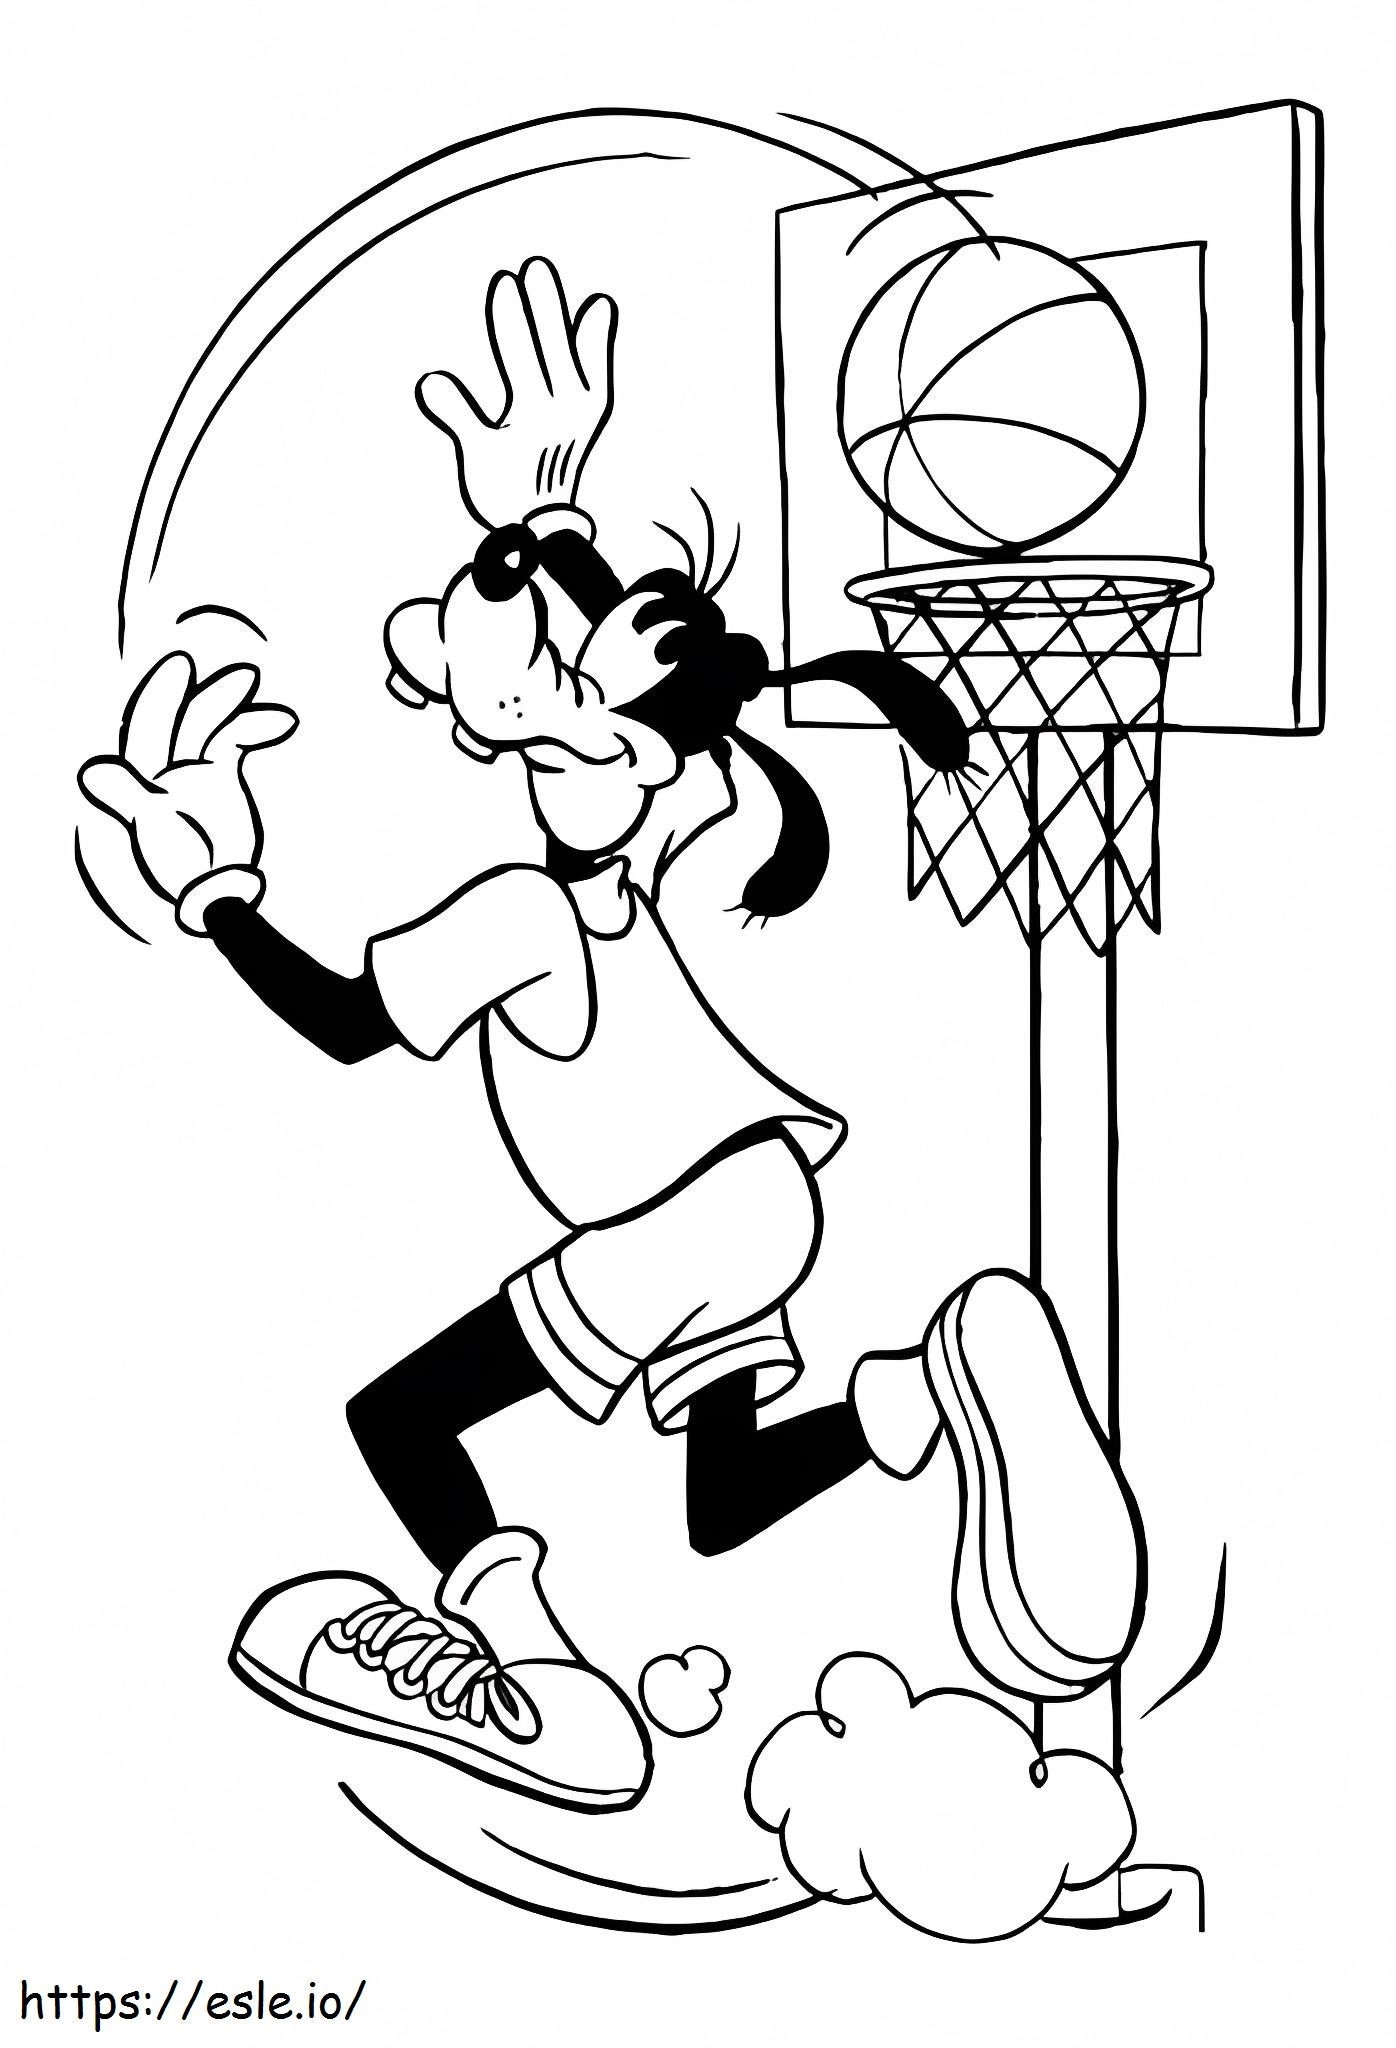 Pateta jogando basquete para colorir